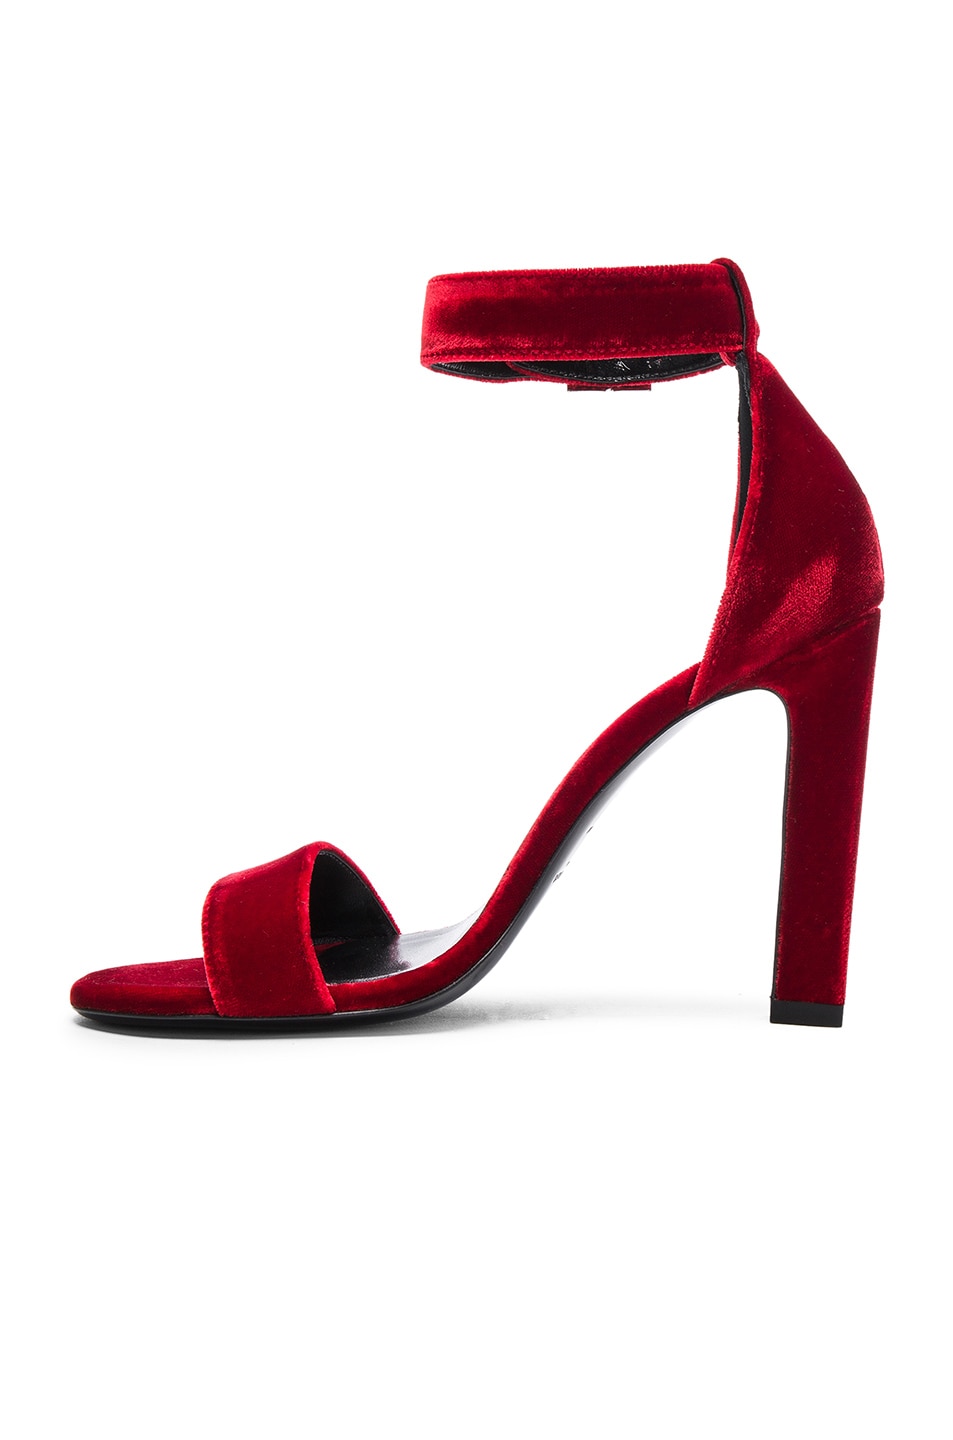 Saint Laurent Grace Velvet Ankle Strap Sandals in Red | FWRD